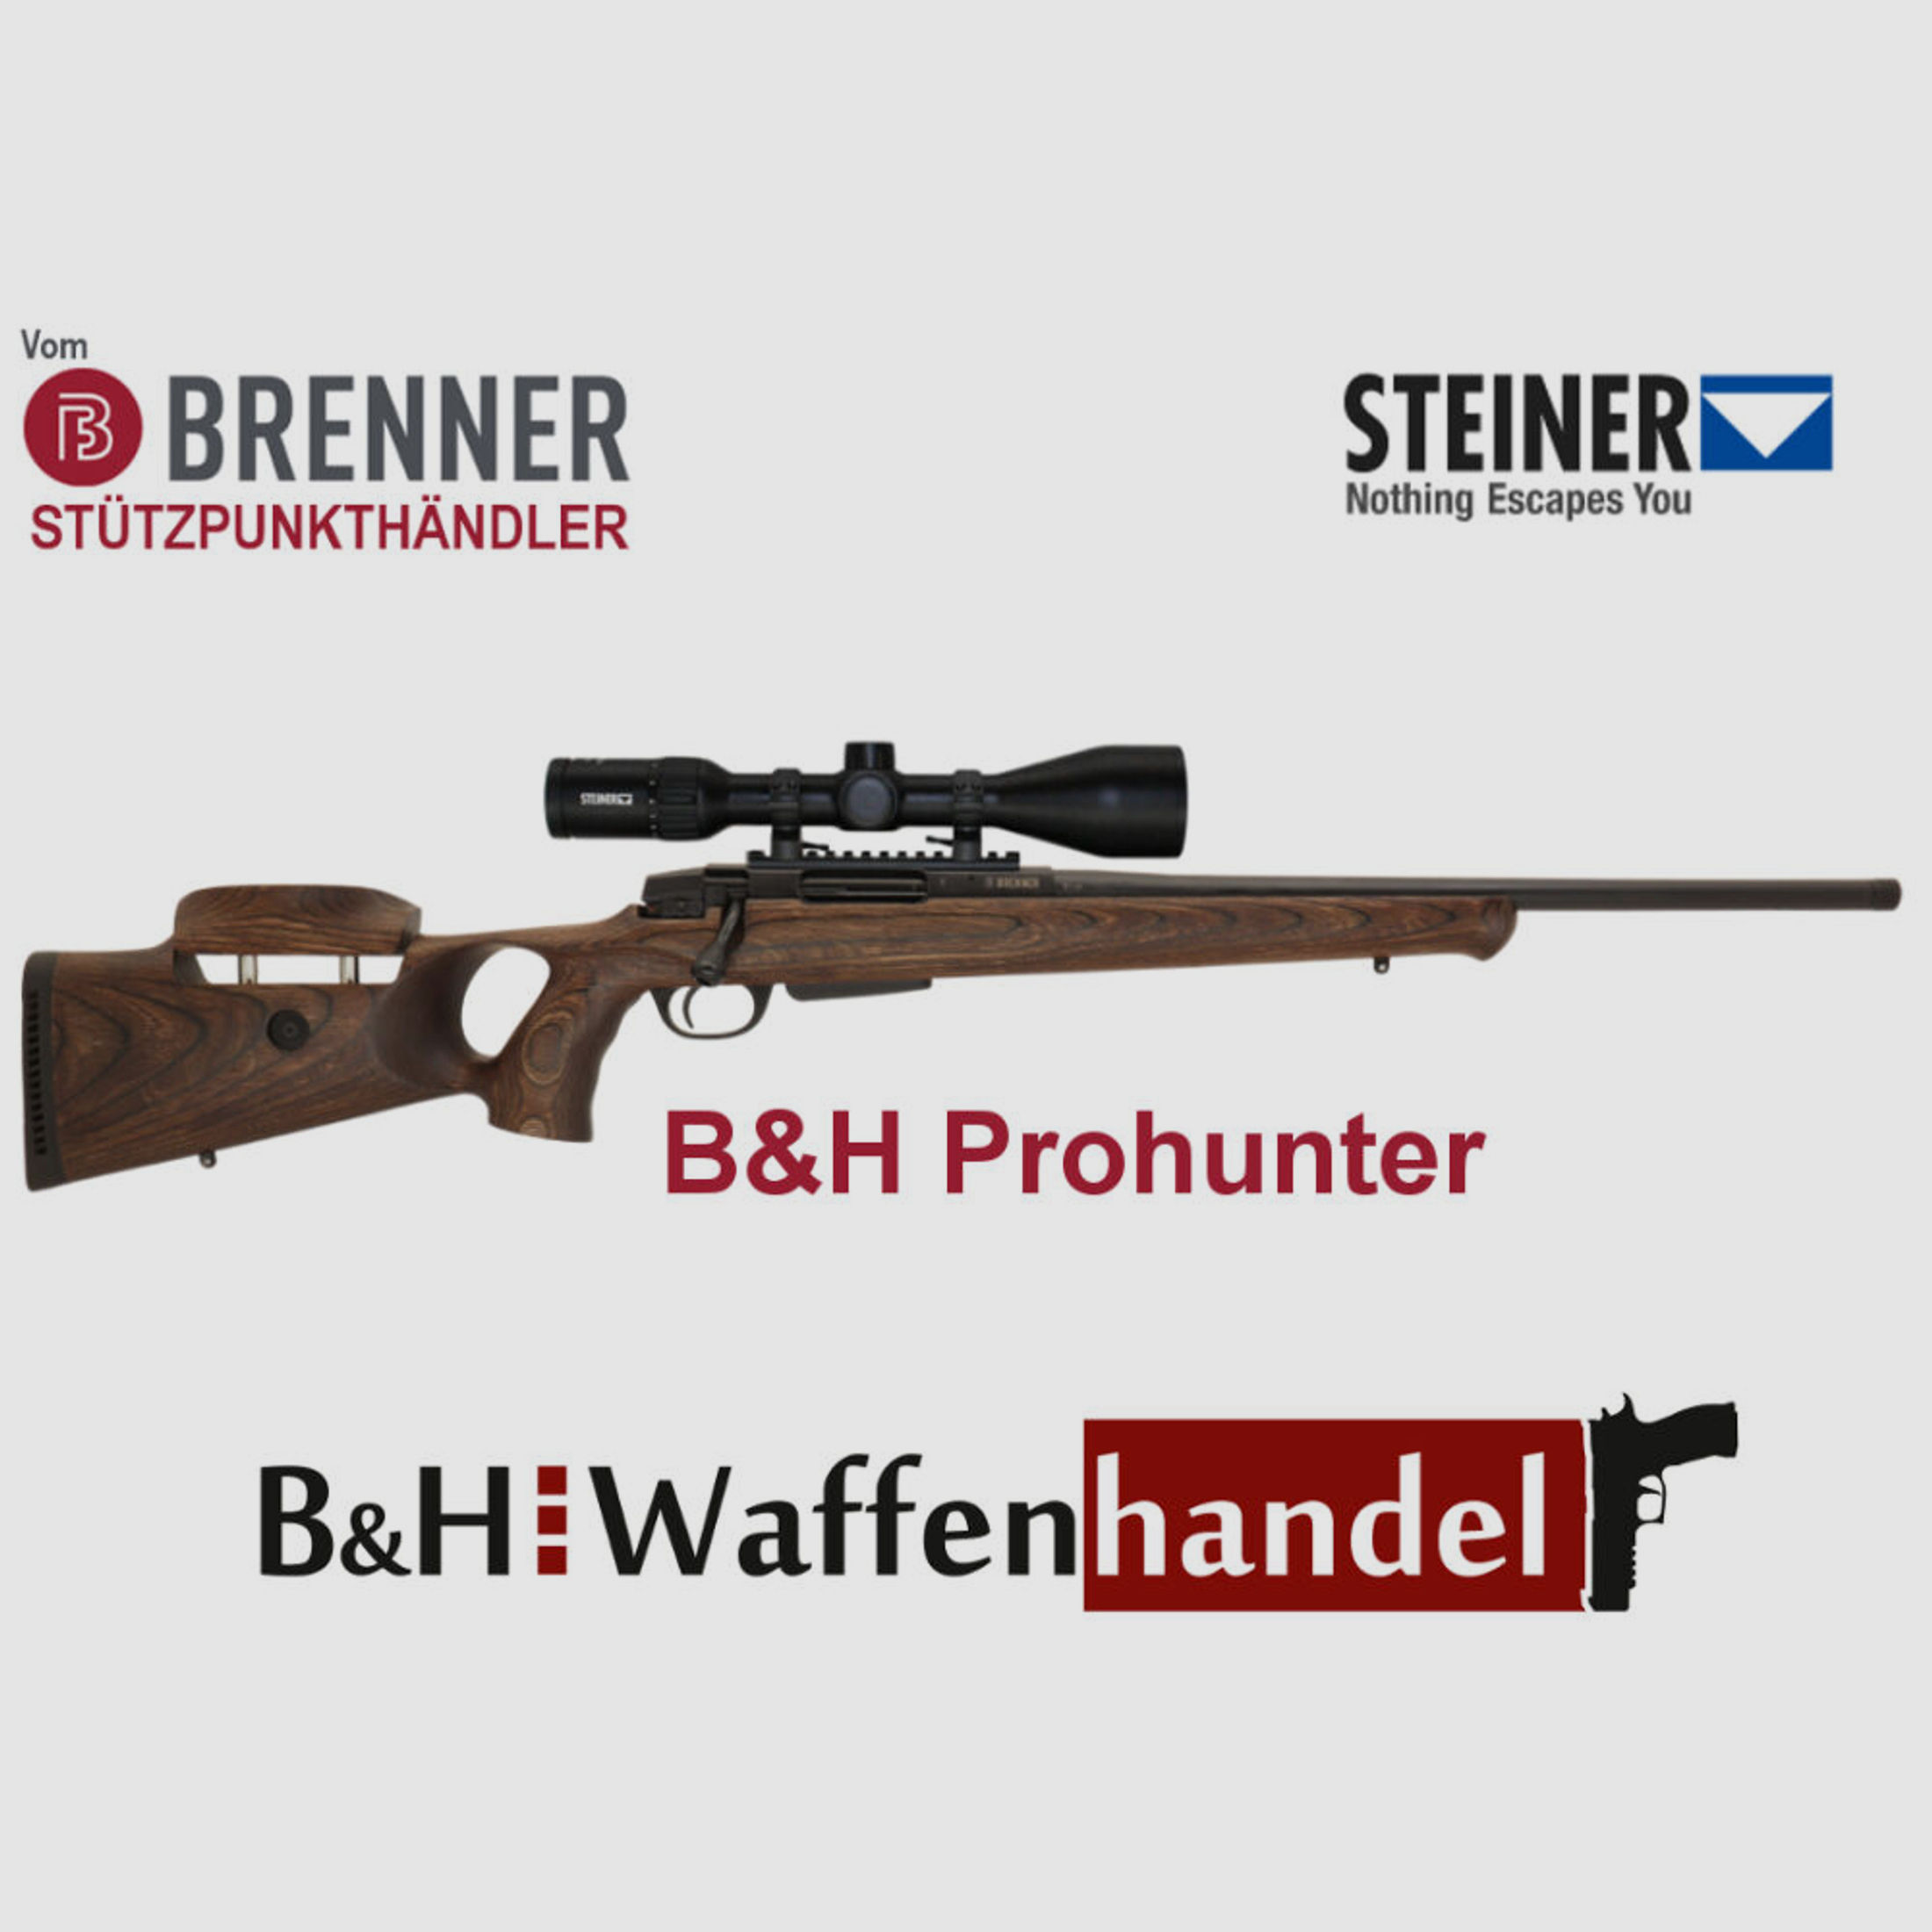 Brenner Komplettpaket:	 BR20 B&H Prohunter Lochschaft mit Verstellung inkl. Steiner 3-12x56 fertig montiert Jagdbüchse